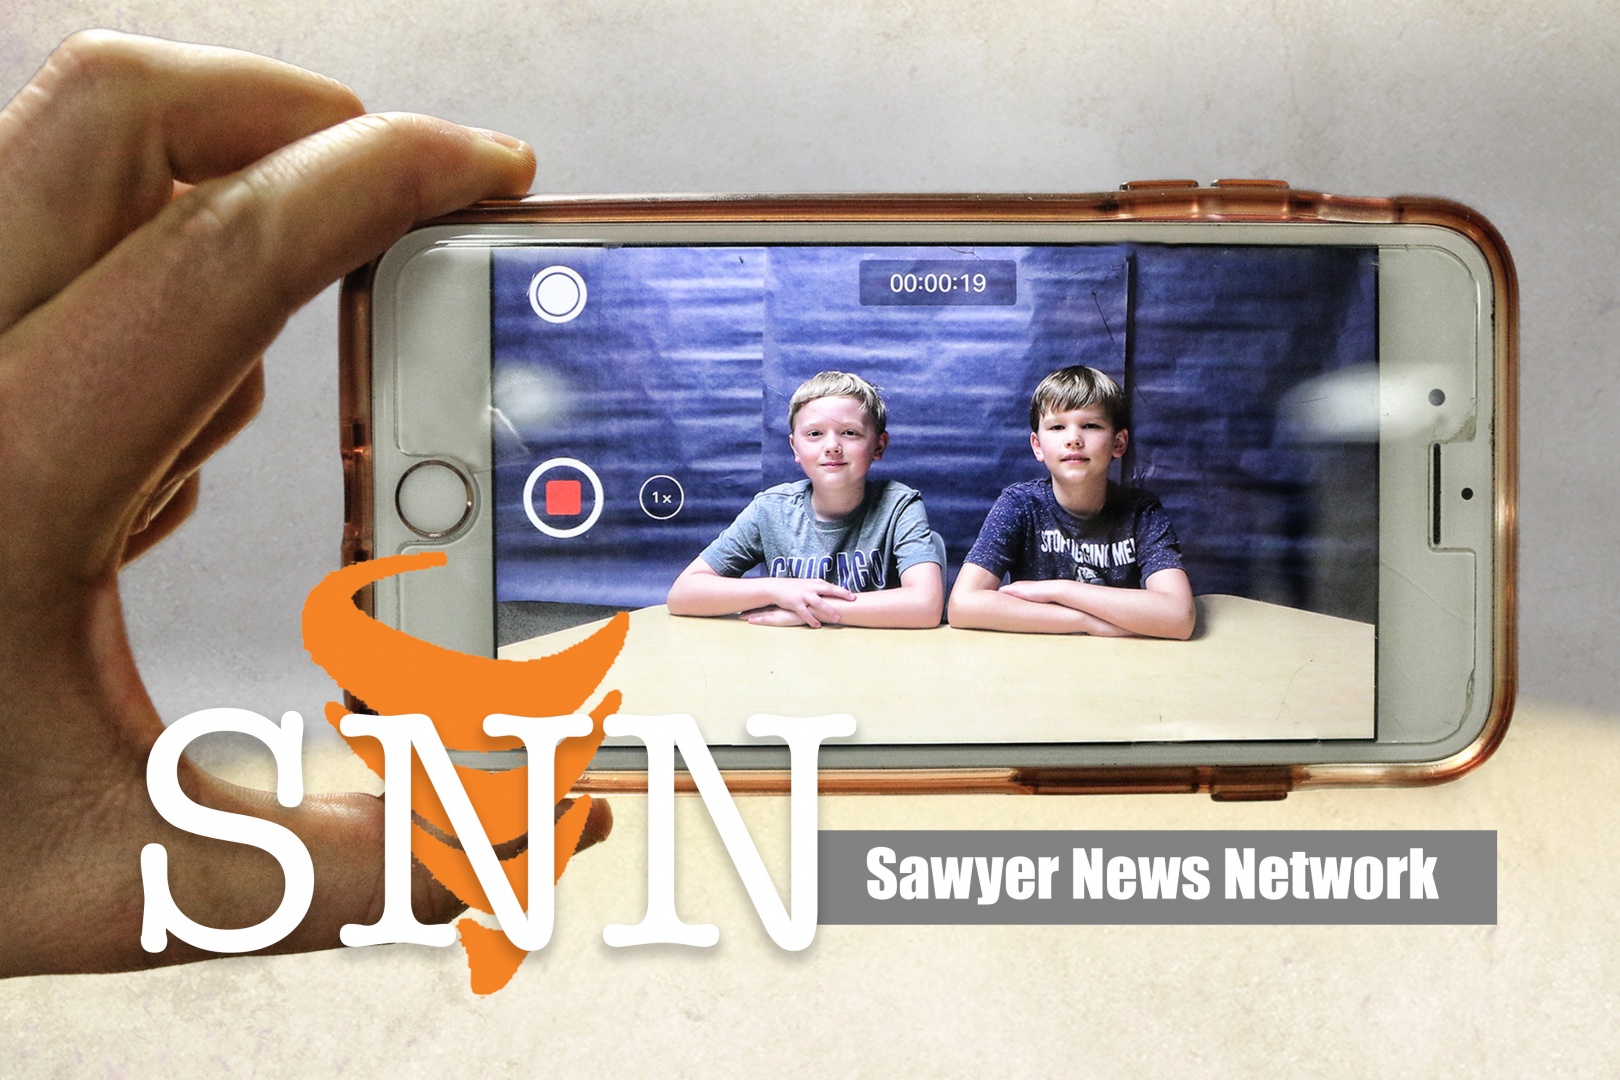 Sawyer News Network